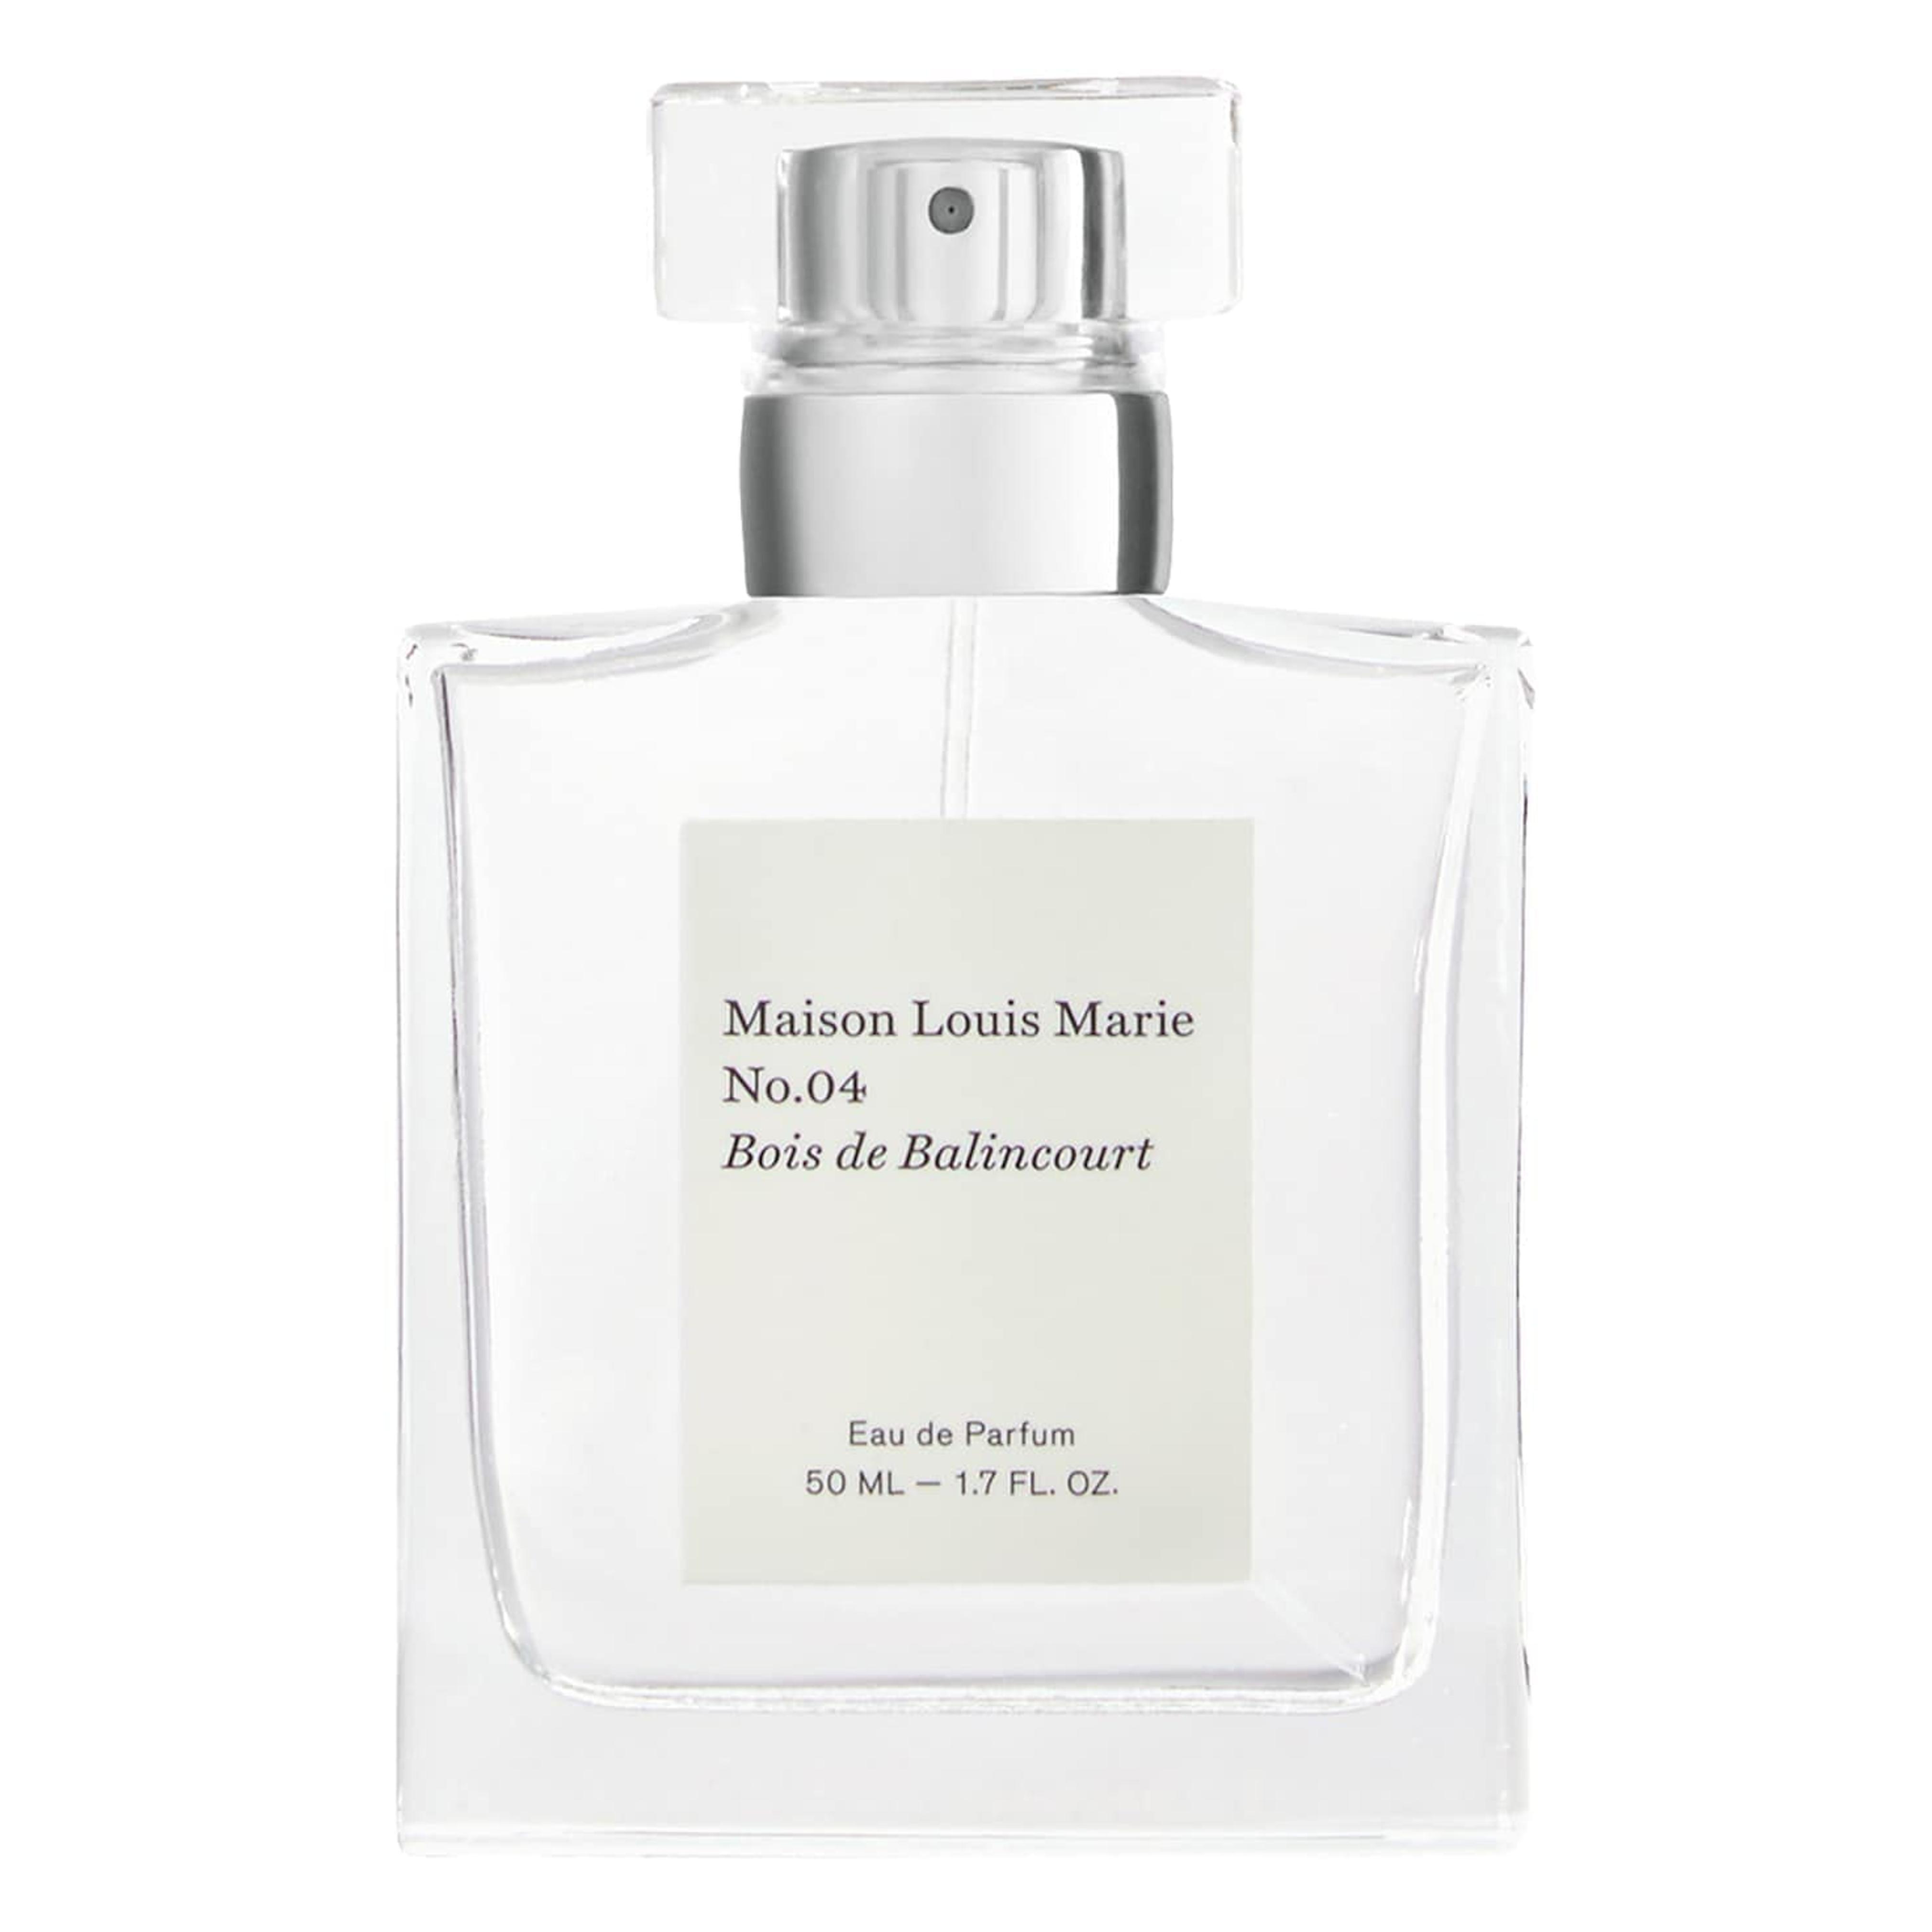 Amazon.com : Maison Louis Marie - No.04 Bois de Balincourt Natural Eau de Parfum Spray | Luxury Clean Beauty + Non-Toxic Fragrance (1.7 fl oz | 50 ml) : Beauty & Personal Care